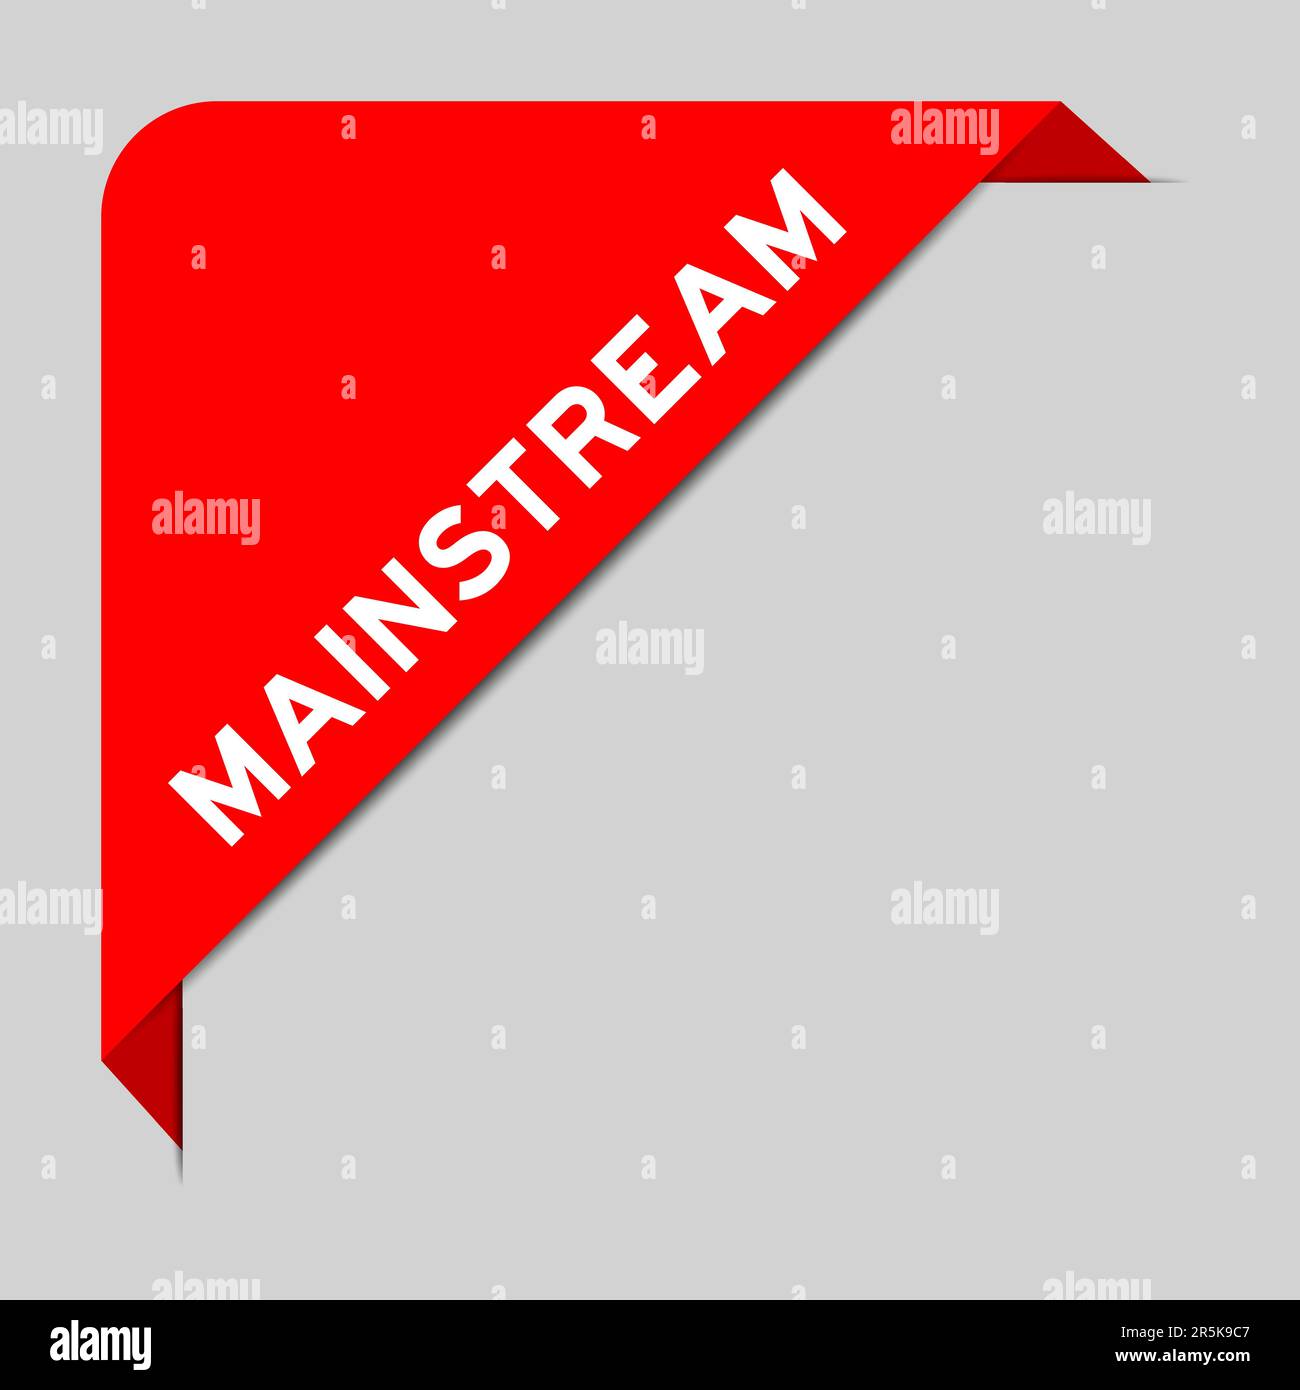 Rote Farbe des Eckbeschriftungsbanners mit dem Wort „Mainstream“ auf grauem Hintergrund Stock Vektor